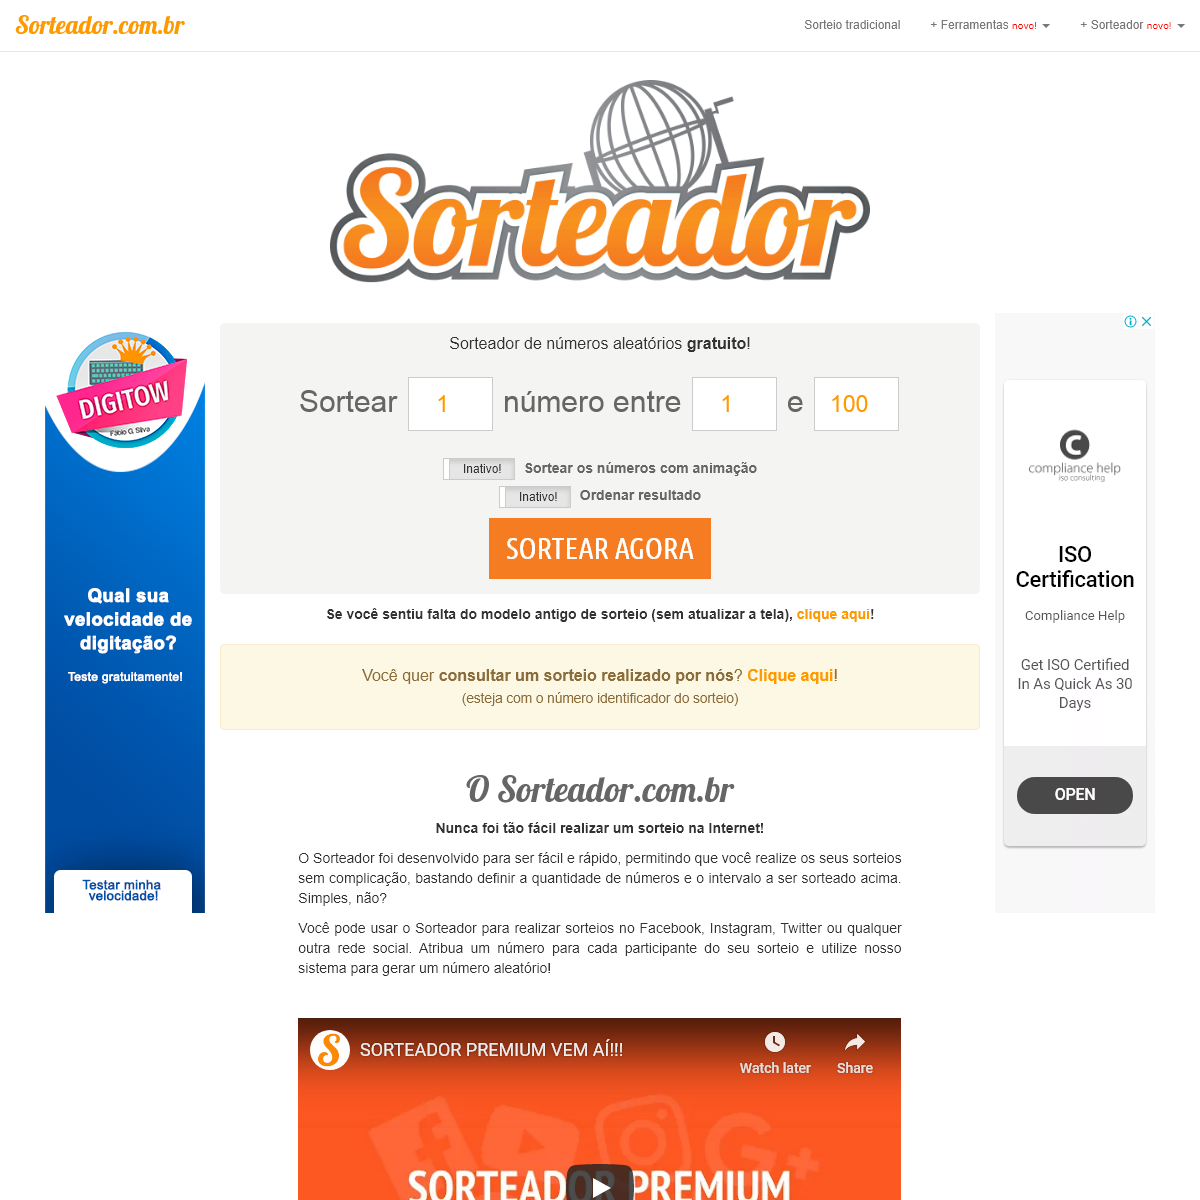 A complete backup of sorteador.com.br